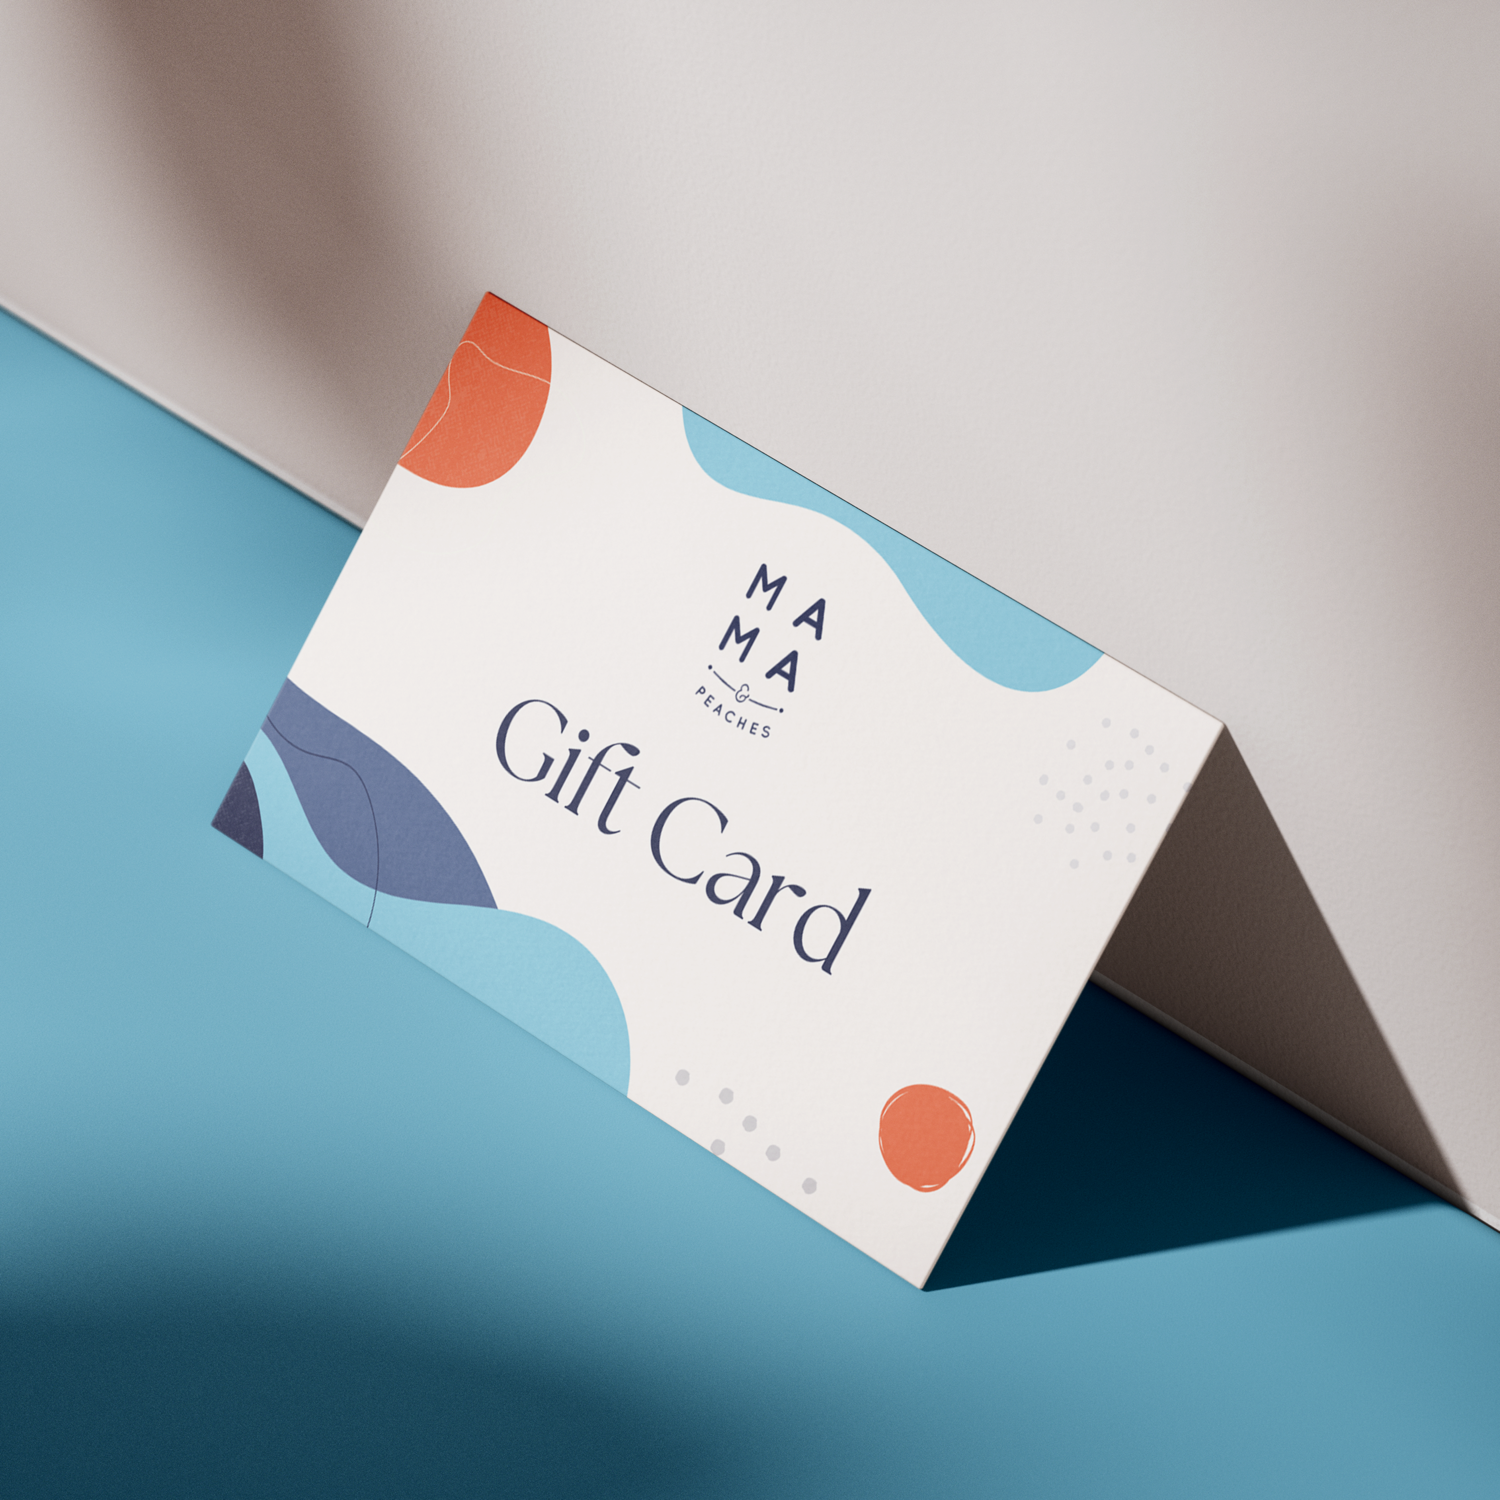 Free Flipkart Gift Card: How To Get Flipkart Gift Card Codes For Free 2022  | CashKaro - YouTube